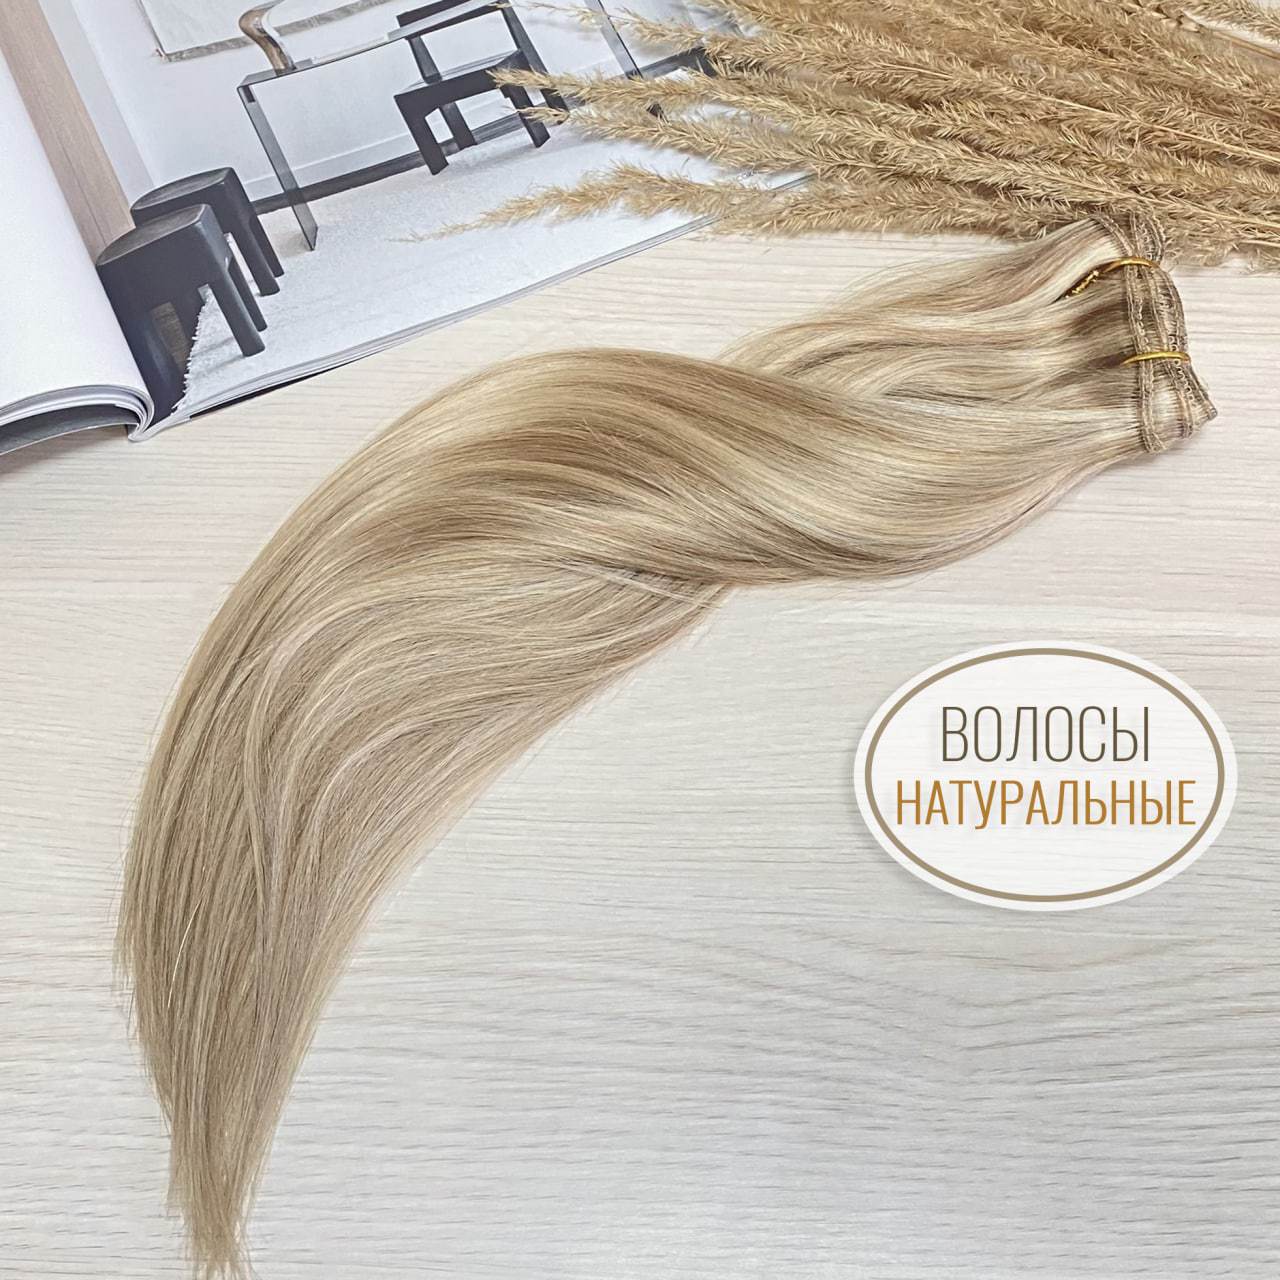 PREMIUM Натуральные волосы на заколках 40см 60г - набор из 3 прядей #18/613